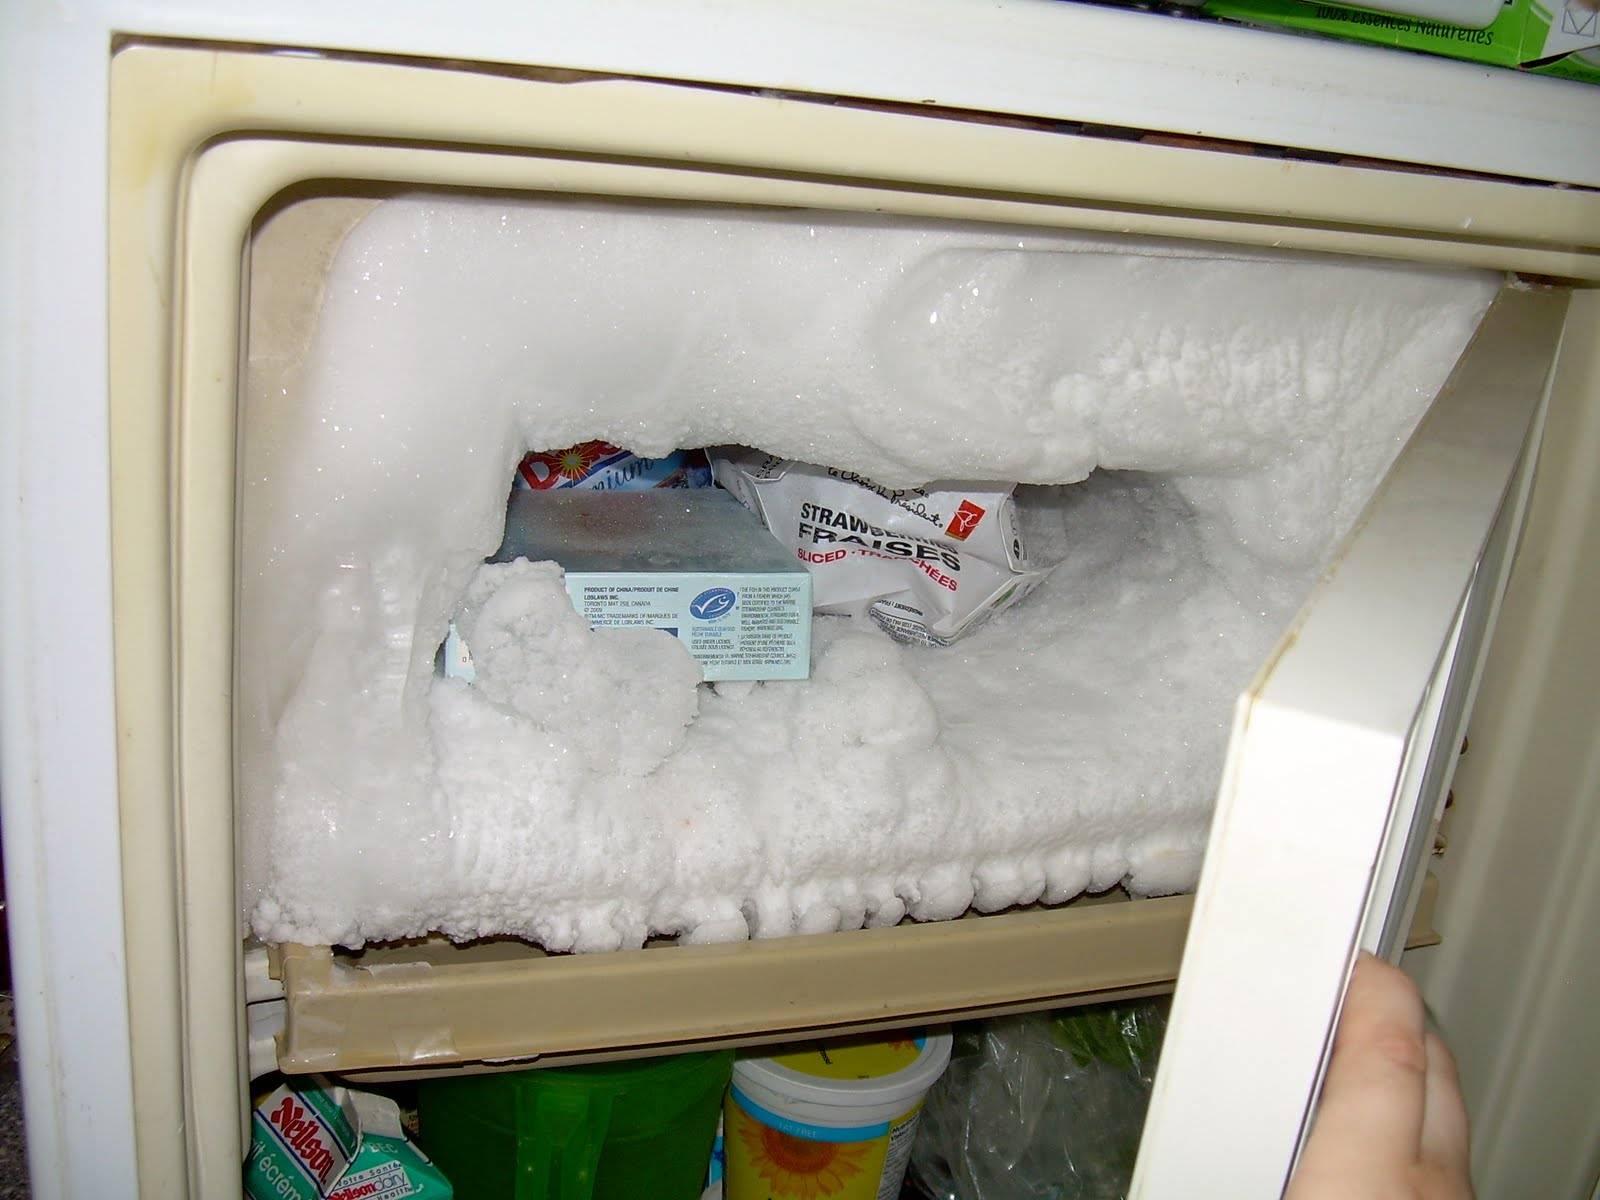 Капельная система разморозки холодильника это: размораживание камеры, что такое значит, автоматическая и ручная